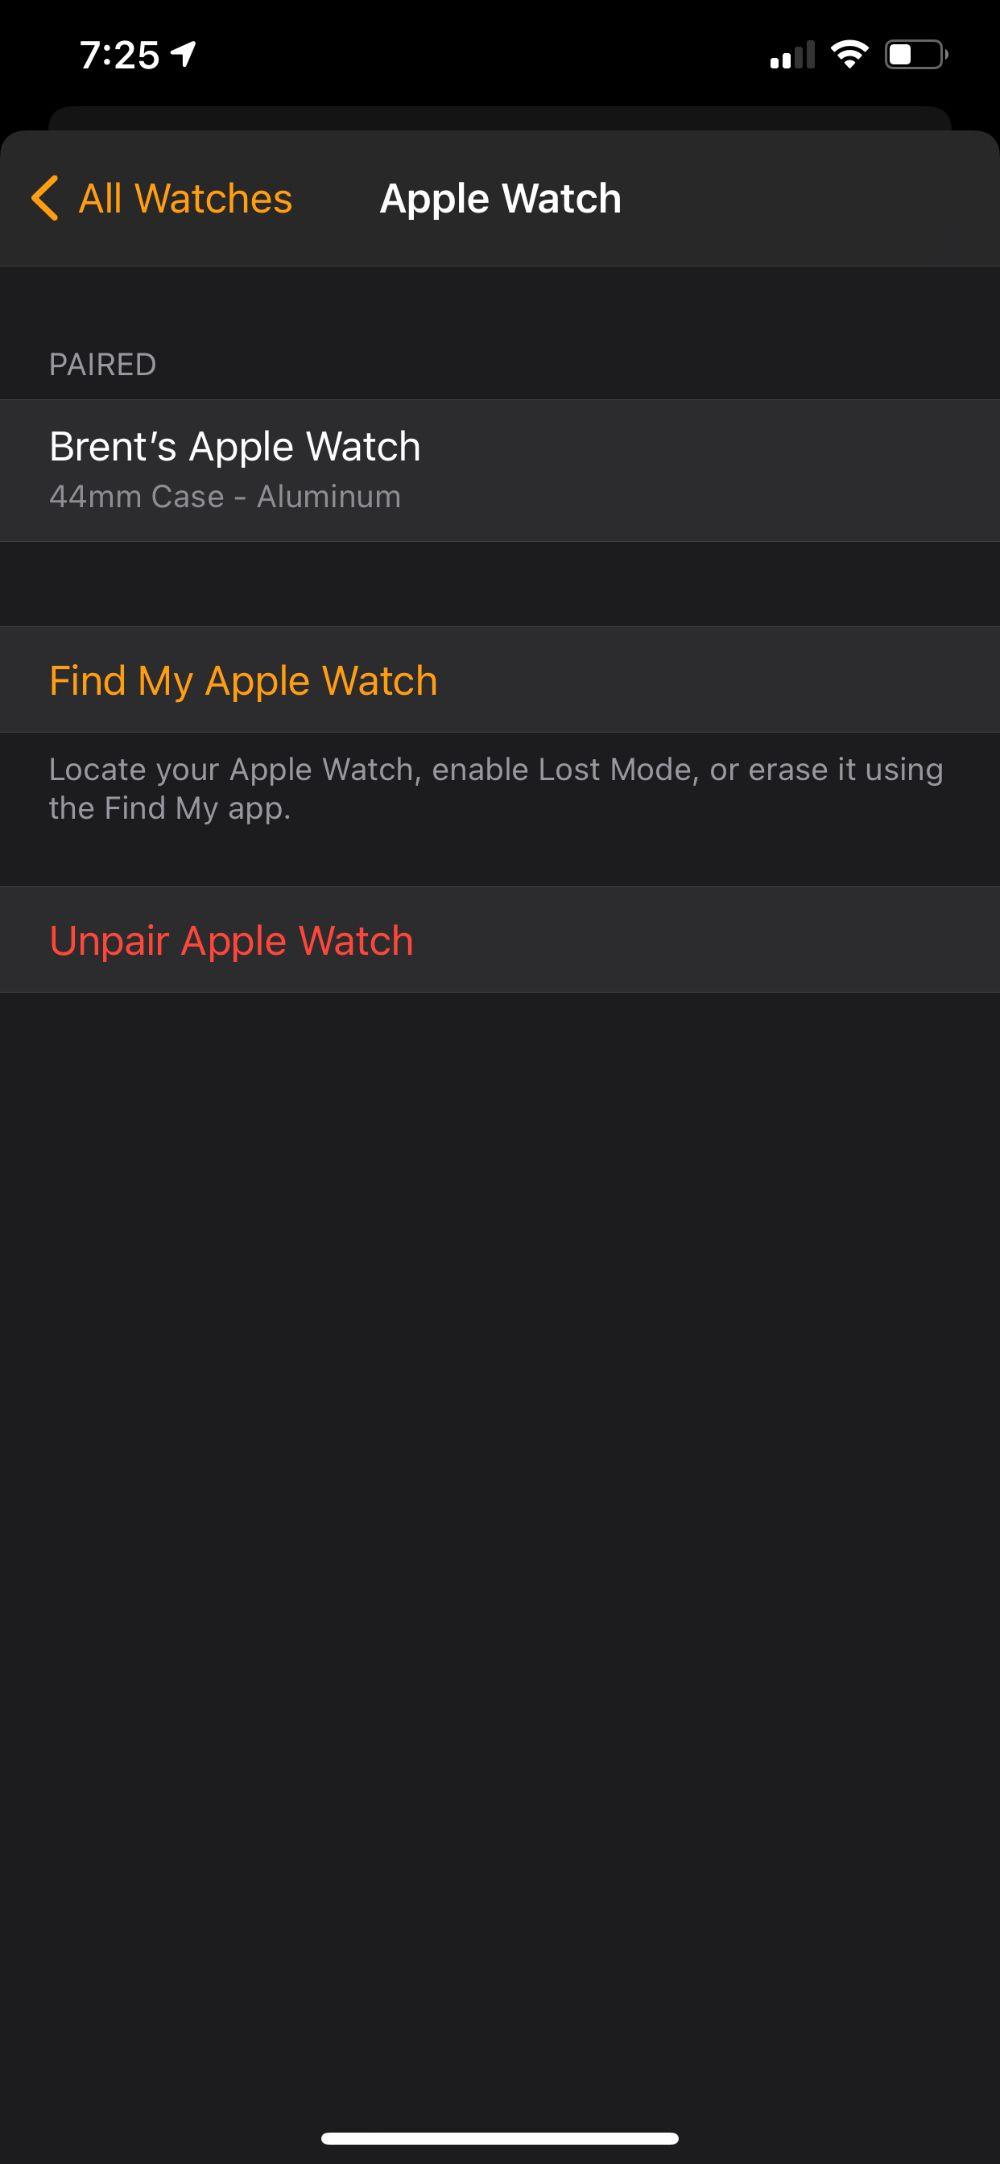 كيفية إلغاء إقران Apple Watch من هاتفك